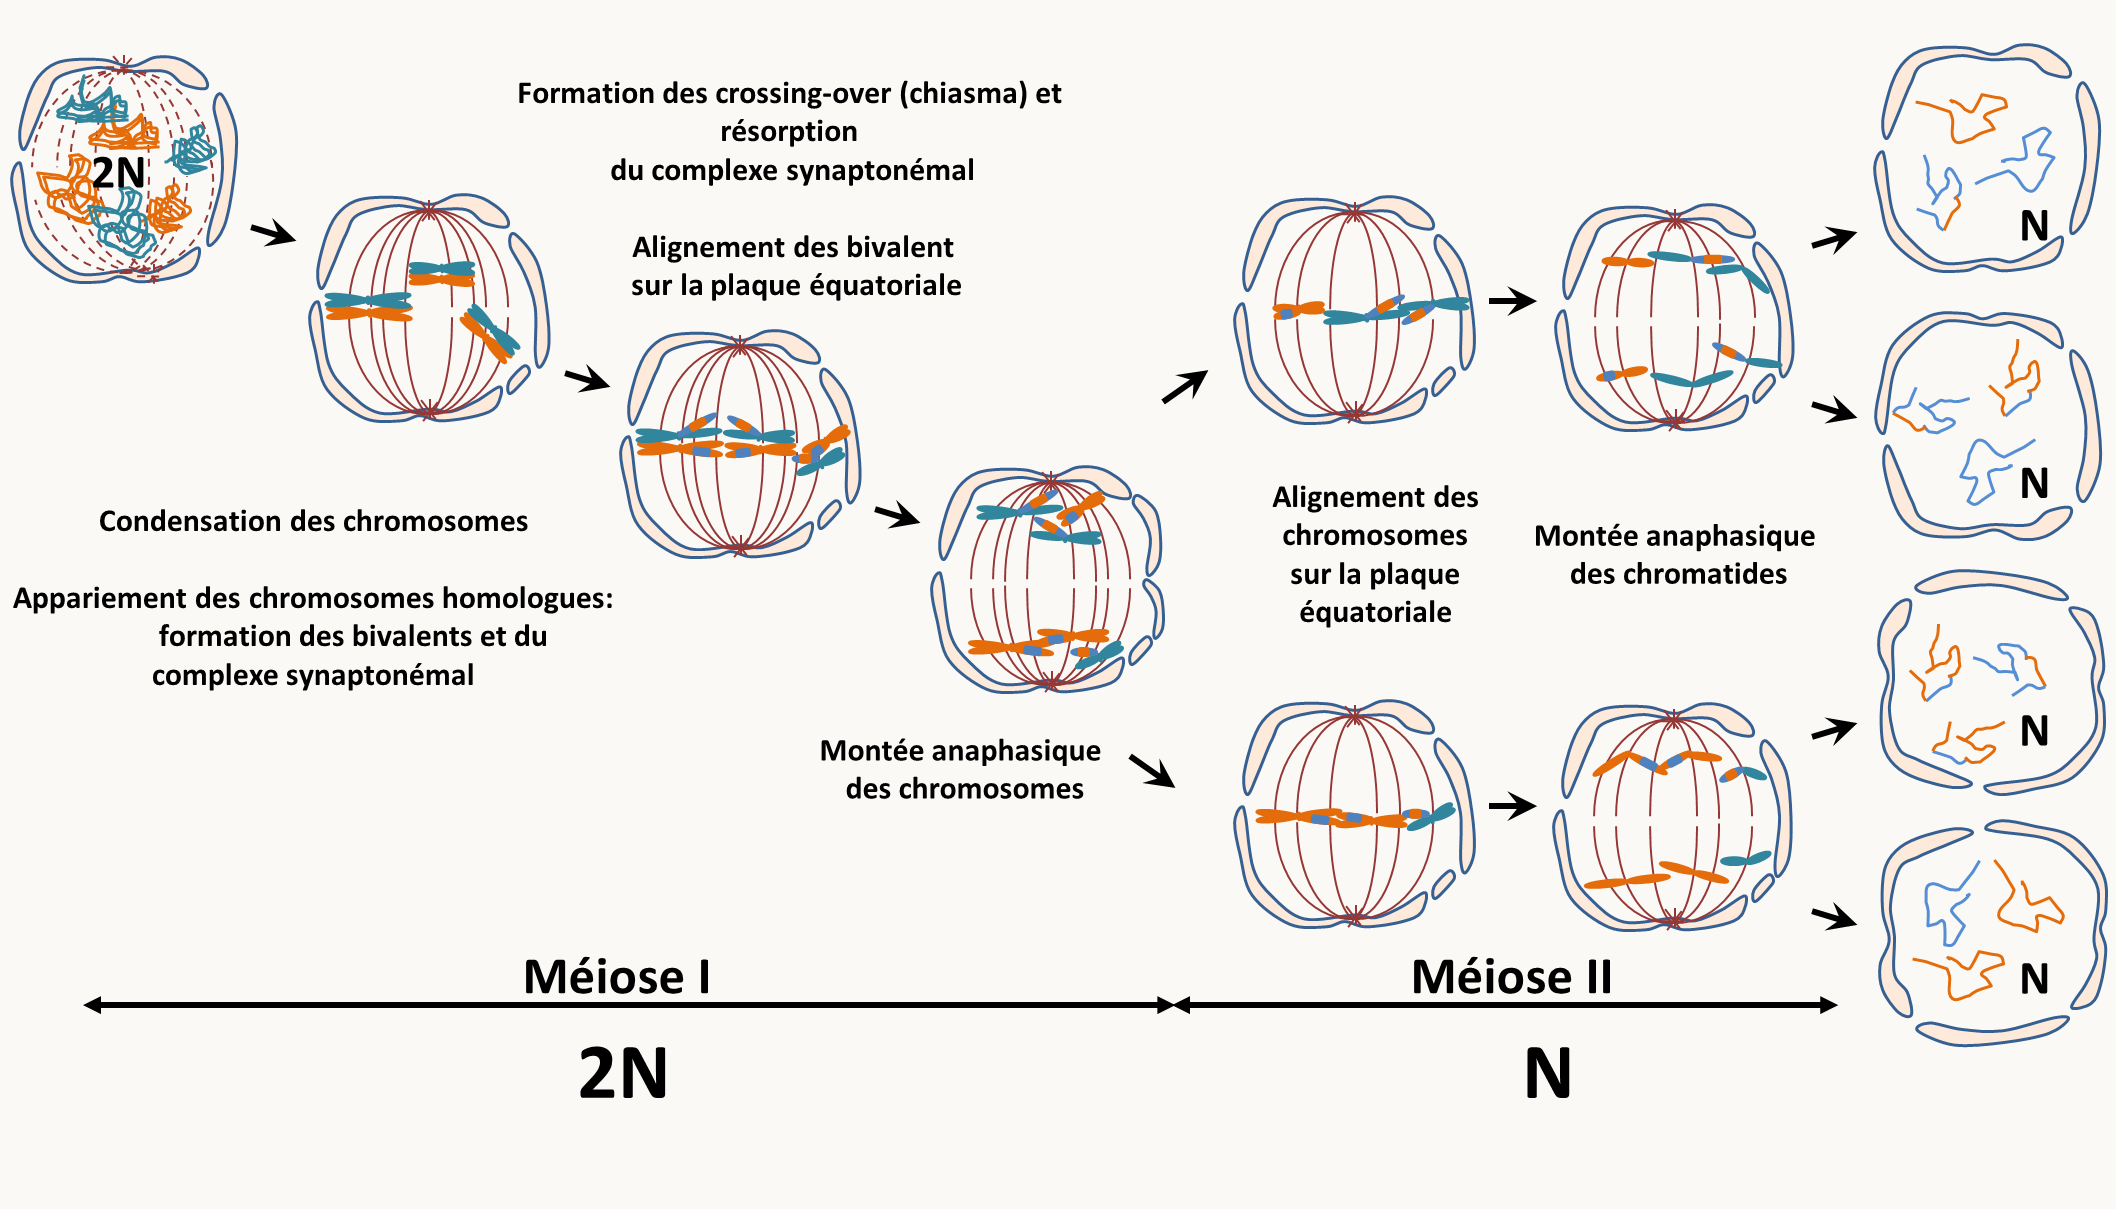 une méiose typique commence par une première division (Méiose I) qui voit lors de la prophase I la condensation des chromosomes (étape du leptotène), suivie de leur association en bivalents: c'est à dire que les chromosomes "homologues" vont s'associer dans un premier temps grâce à un complexe protéique: le complexe synaptonémal (étape du zygotène). L'association est suivie de recombinaison entre les chromatides des deux chromosomes des bivalents (étape du pachytène). Ceux-ci sont visibles cytologiquement: il s'agit des chiasmas. Ces chiasmas maintiennent entre eux les deux chromosomes lorsque le complexe synaptonémal se résorbe en fin de prophase I (étape du diplotène). Les bivalents vont ensuite se positionner sur la plaque équatoriale. Une fois en position, l'étape de métaphase I est atteinte. Lors de l'étape suivante (anaphase I), la résolution des chiasmas permets aux deux chromosomes (chacun ayant deux chromatides) de se séparer et de s'éloigner à chacun des pôles du noyau. La télophase I voit la décondensation partielle des chromosomes. Elle est immédiatement suivie de leur recondensation nécessaire pour la deuxième division de méiose (Méiose II) qui est une mitose classique. Notez que chez de nombreux eucaryotes, la méiose peut être suivie de mitoses dites postméiotiques comme chez les champignons ascomycètes filamenteux. Pour les organelles situées dans le cytoplasme et contenant leur propre génome (mitochondrie, plastes, etc.), il n'existe pas en général de mécanismes particuliers qui vont permettre leur transmission préférentielle (attention, il existe des exceptions), mais si l'organisme différentie des gamètes morphologiquement différents (mâles notés ♂ et femelles notés ♀) il va y a voir un biais de transmission aux gamètes. le cas le plus commun est que seul le gamète femelle transmet l'ADN des organelles.